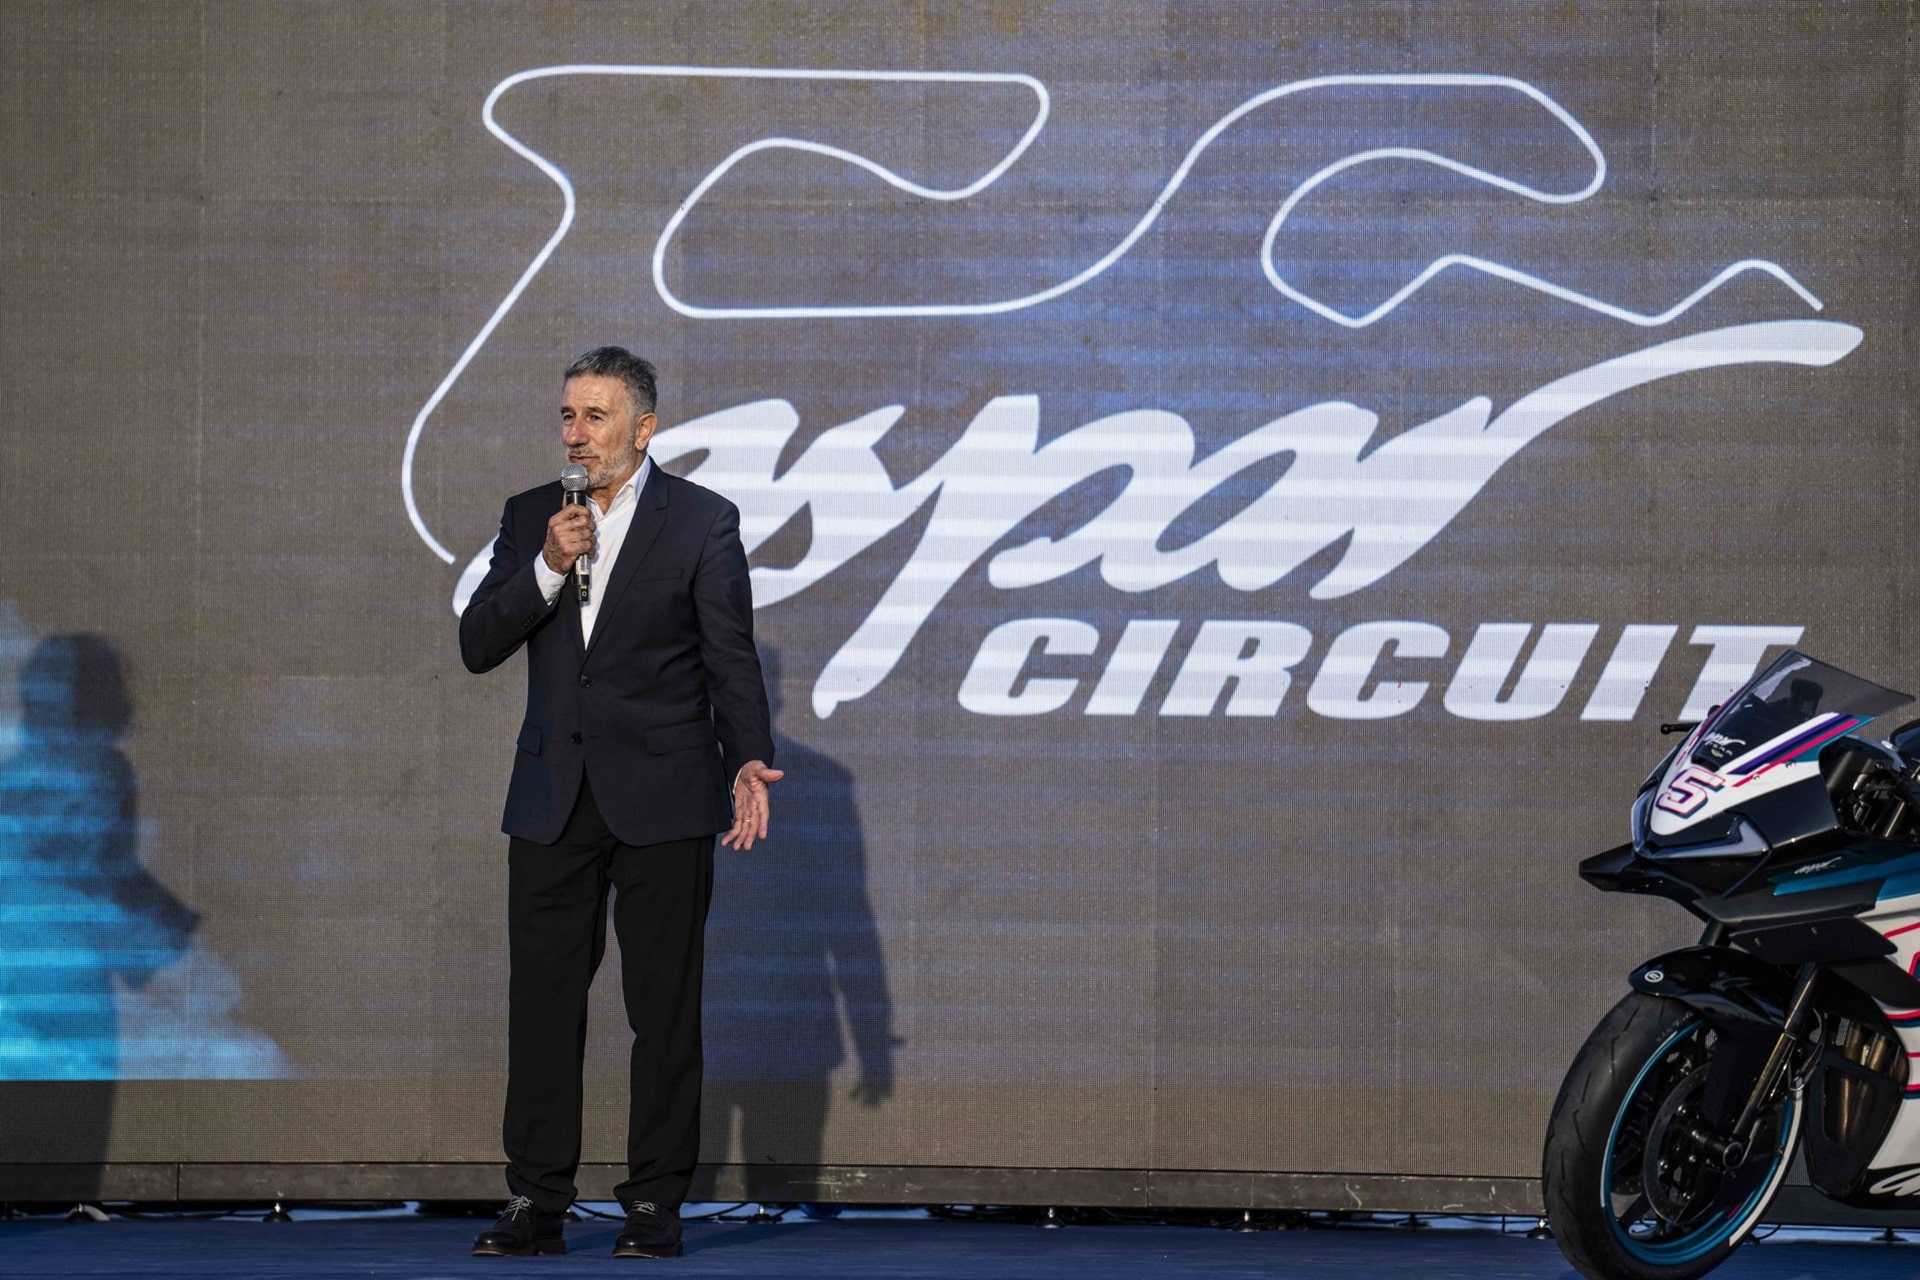 El Aspar Circuit abre las puertas de la primera academia global de motociclismo